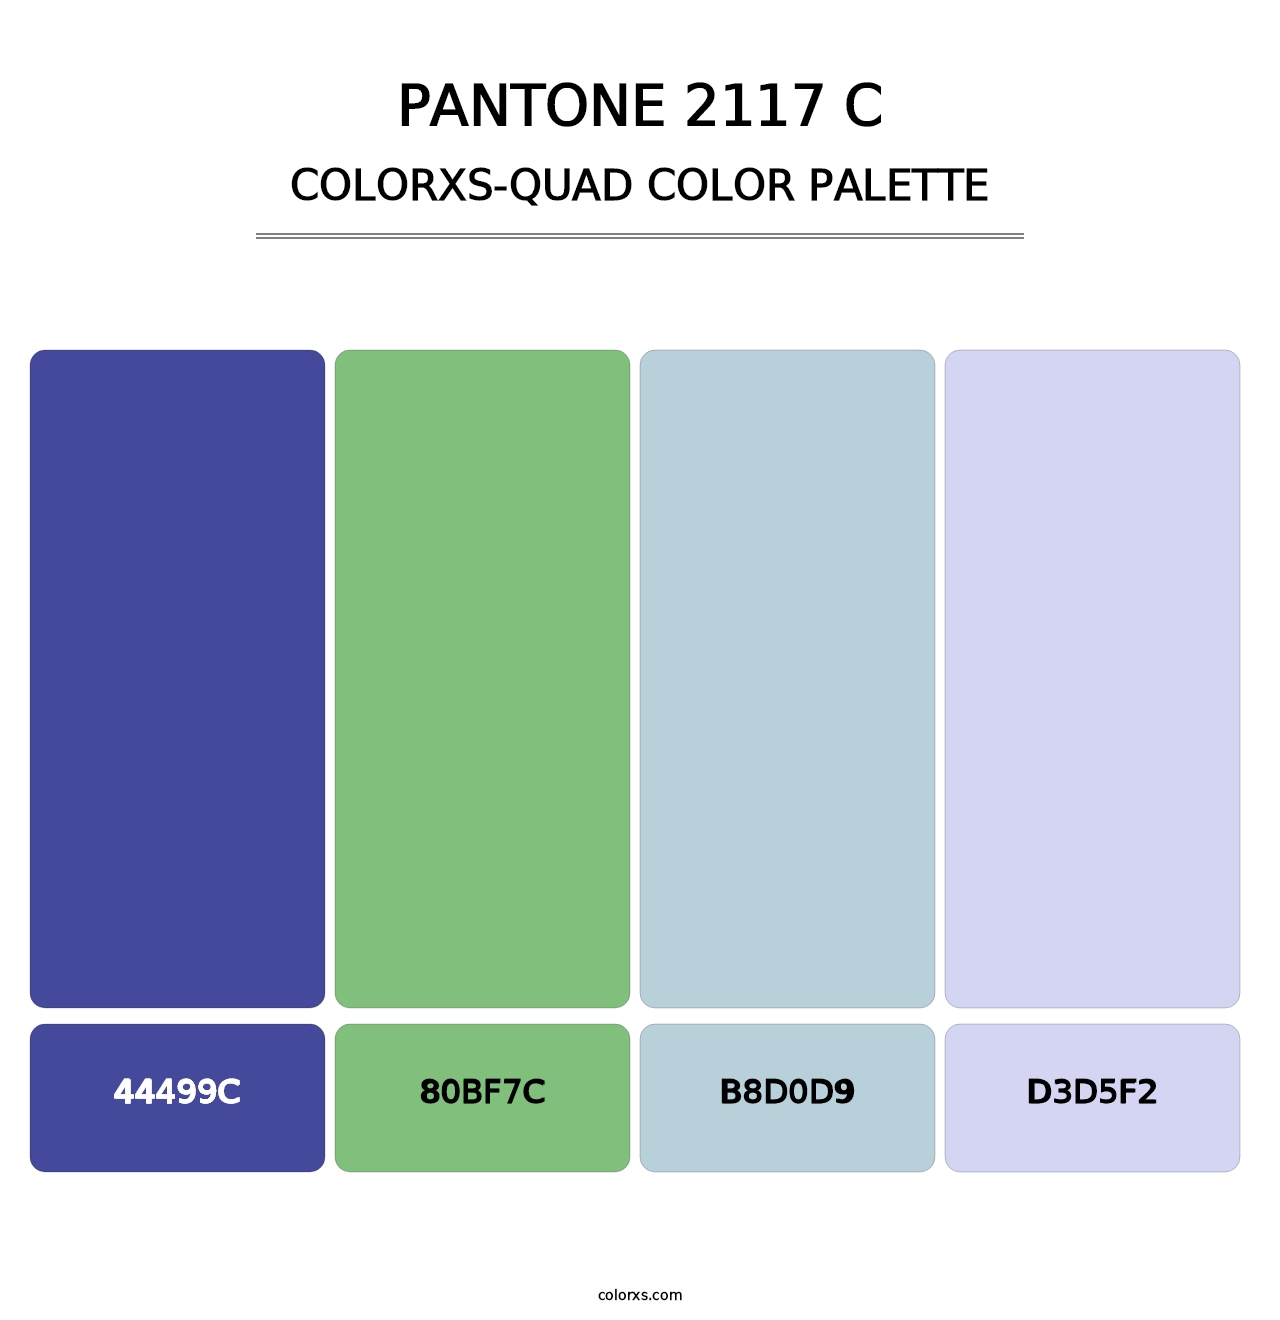 PANTONE 2117 C - Colorxs Quad Palette